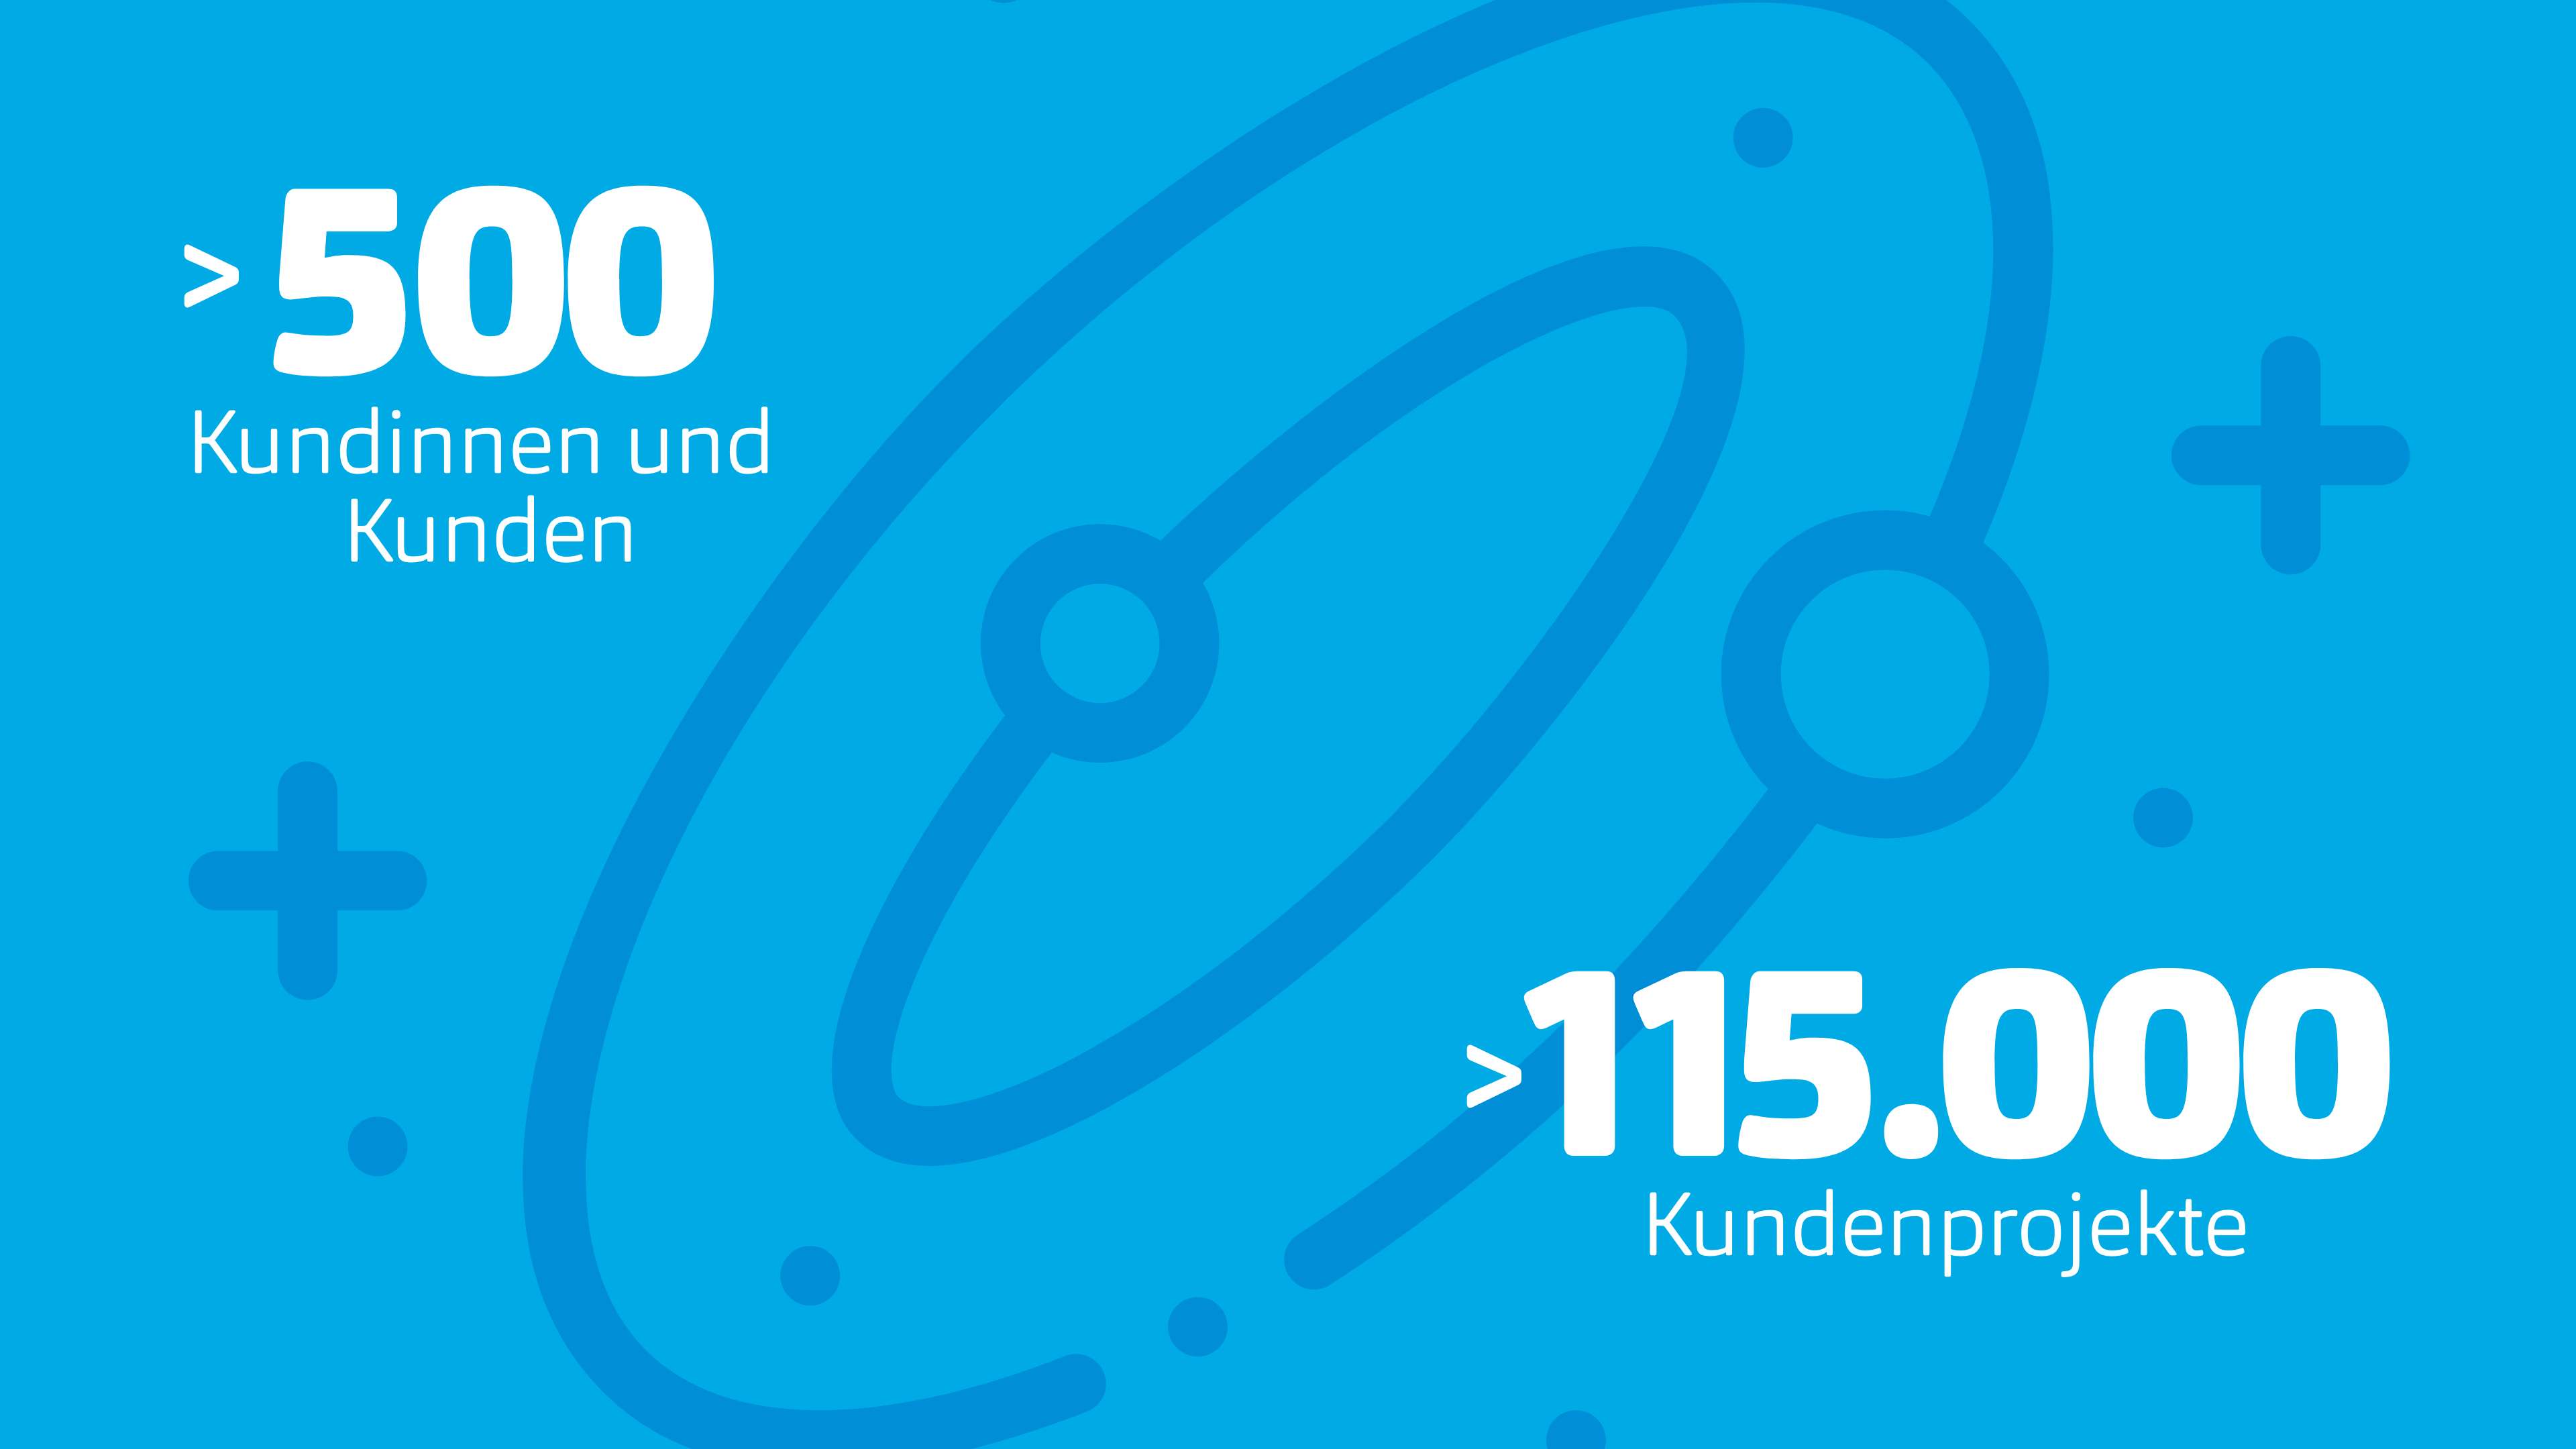 Der HOCHZWEI-Kosmos: > 500 Kundinnen und Kunden, > 115.000 Kundenprojekte